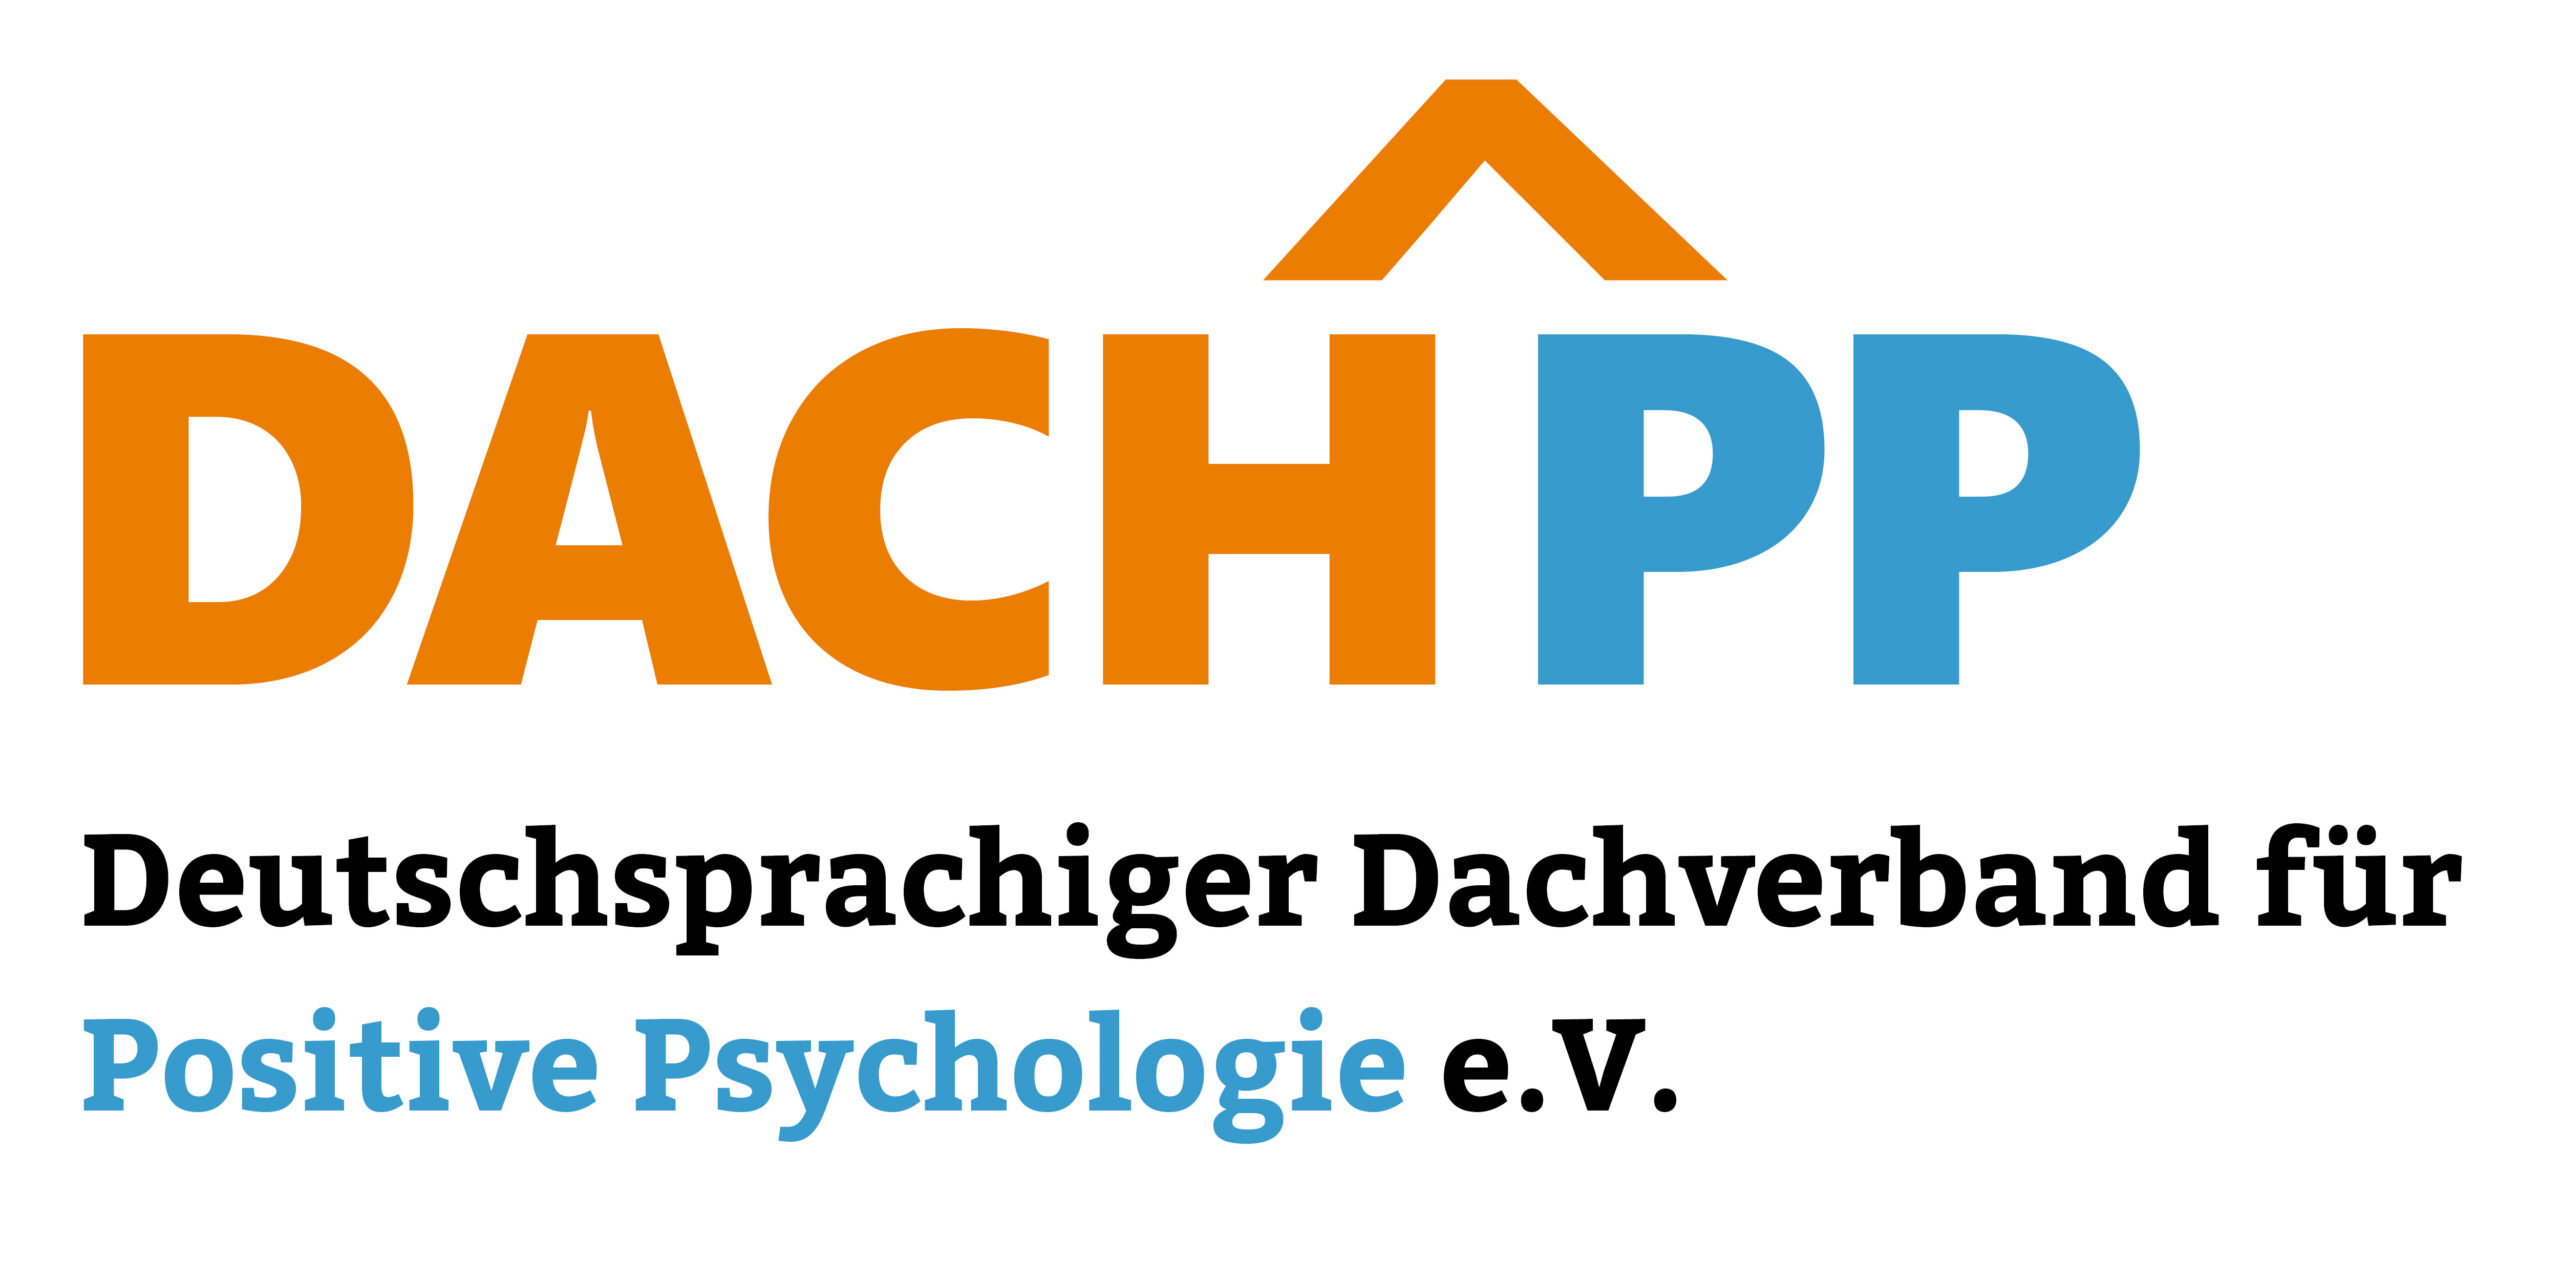 Mitglied im deutschsprachigen Dachverband für Positive Psychologie e.V.